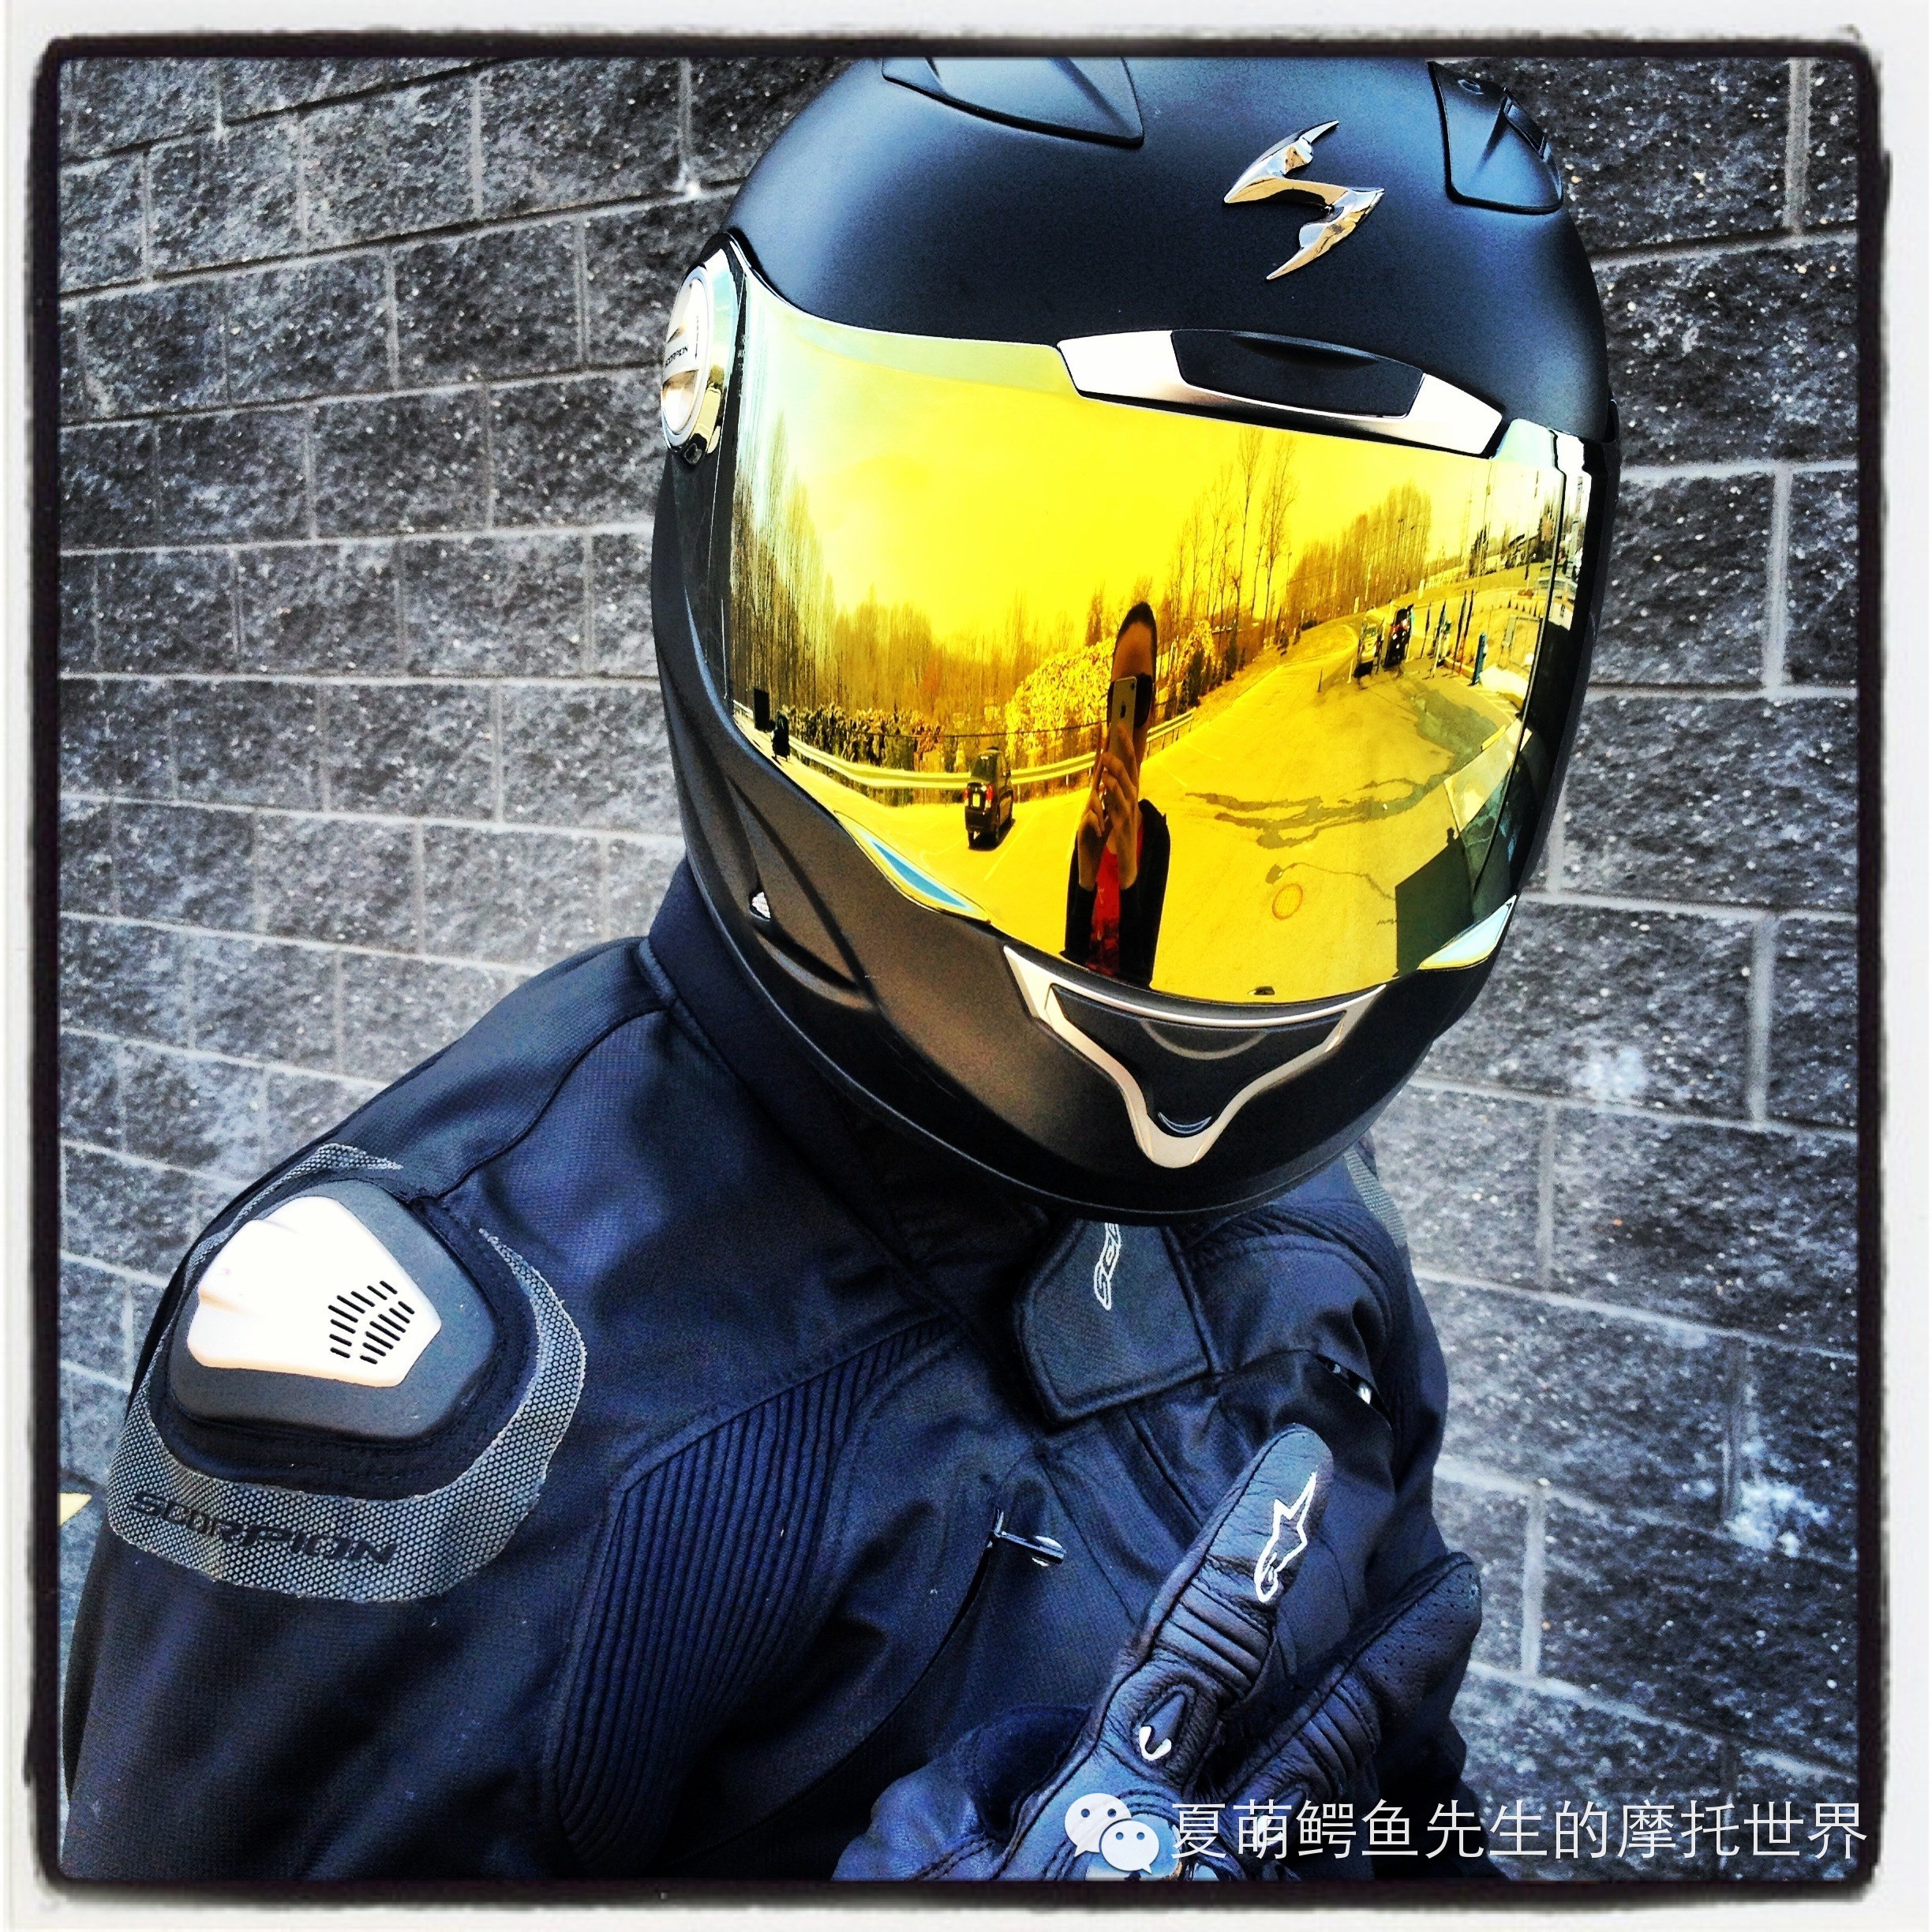 摩托车头盔护目镜/挡风的科技进化